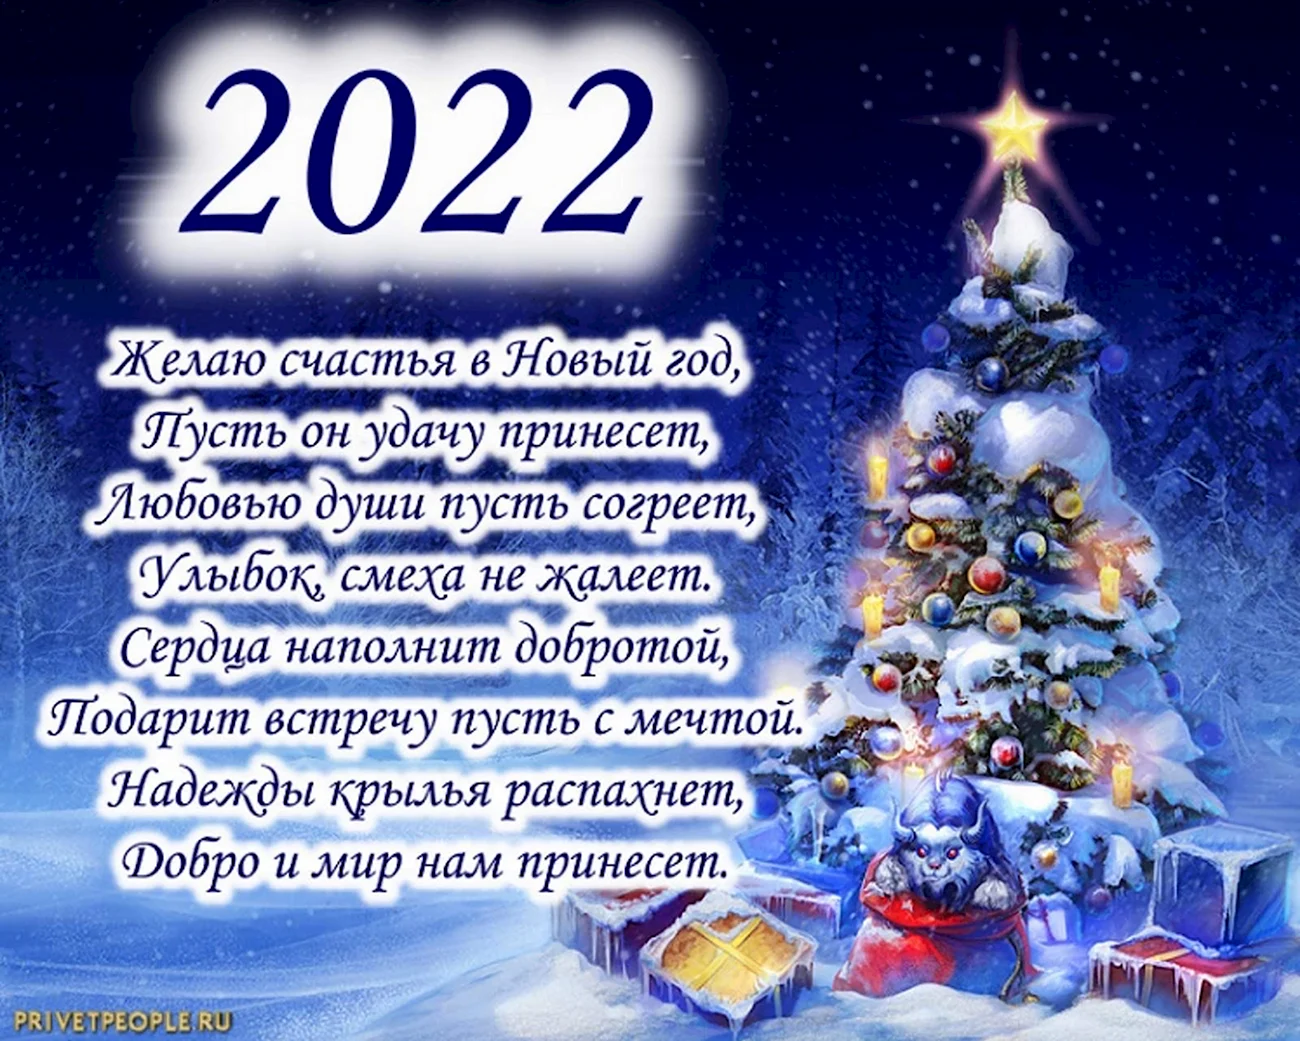 Поздравление с новым годом 2022. Картинка